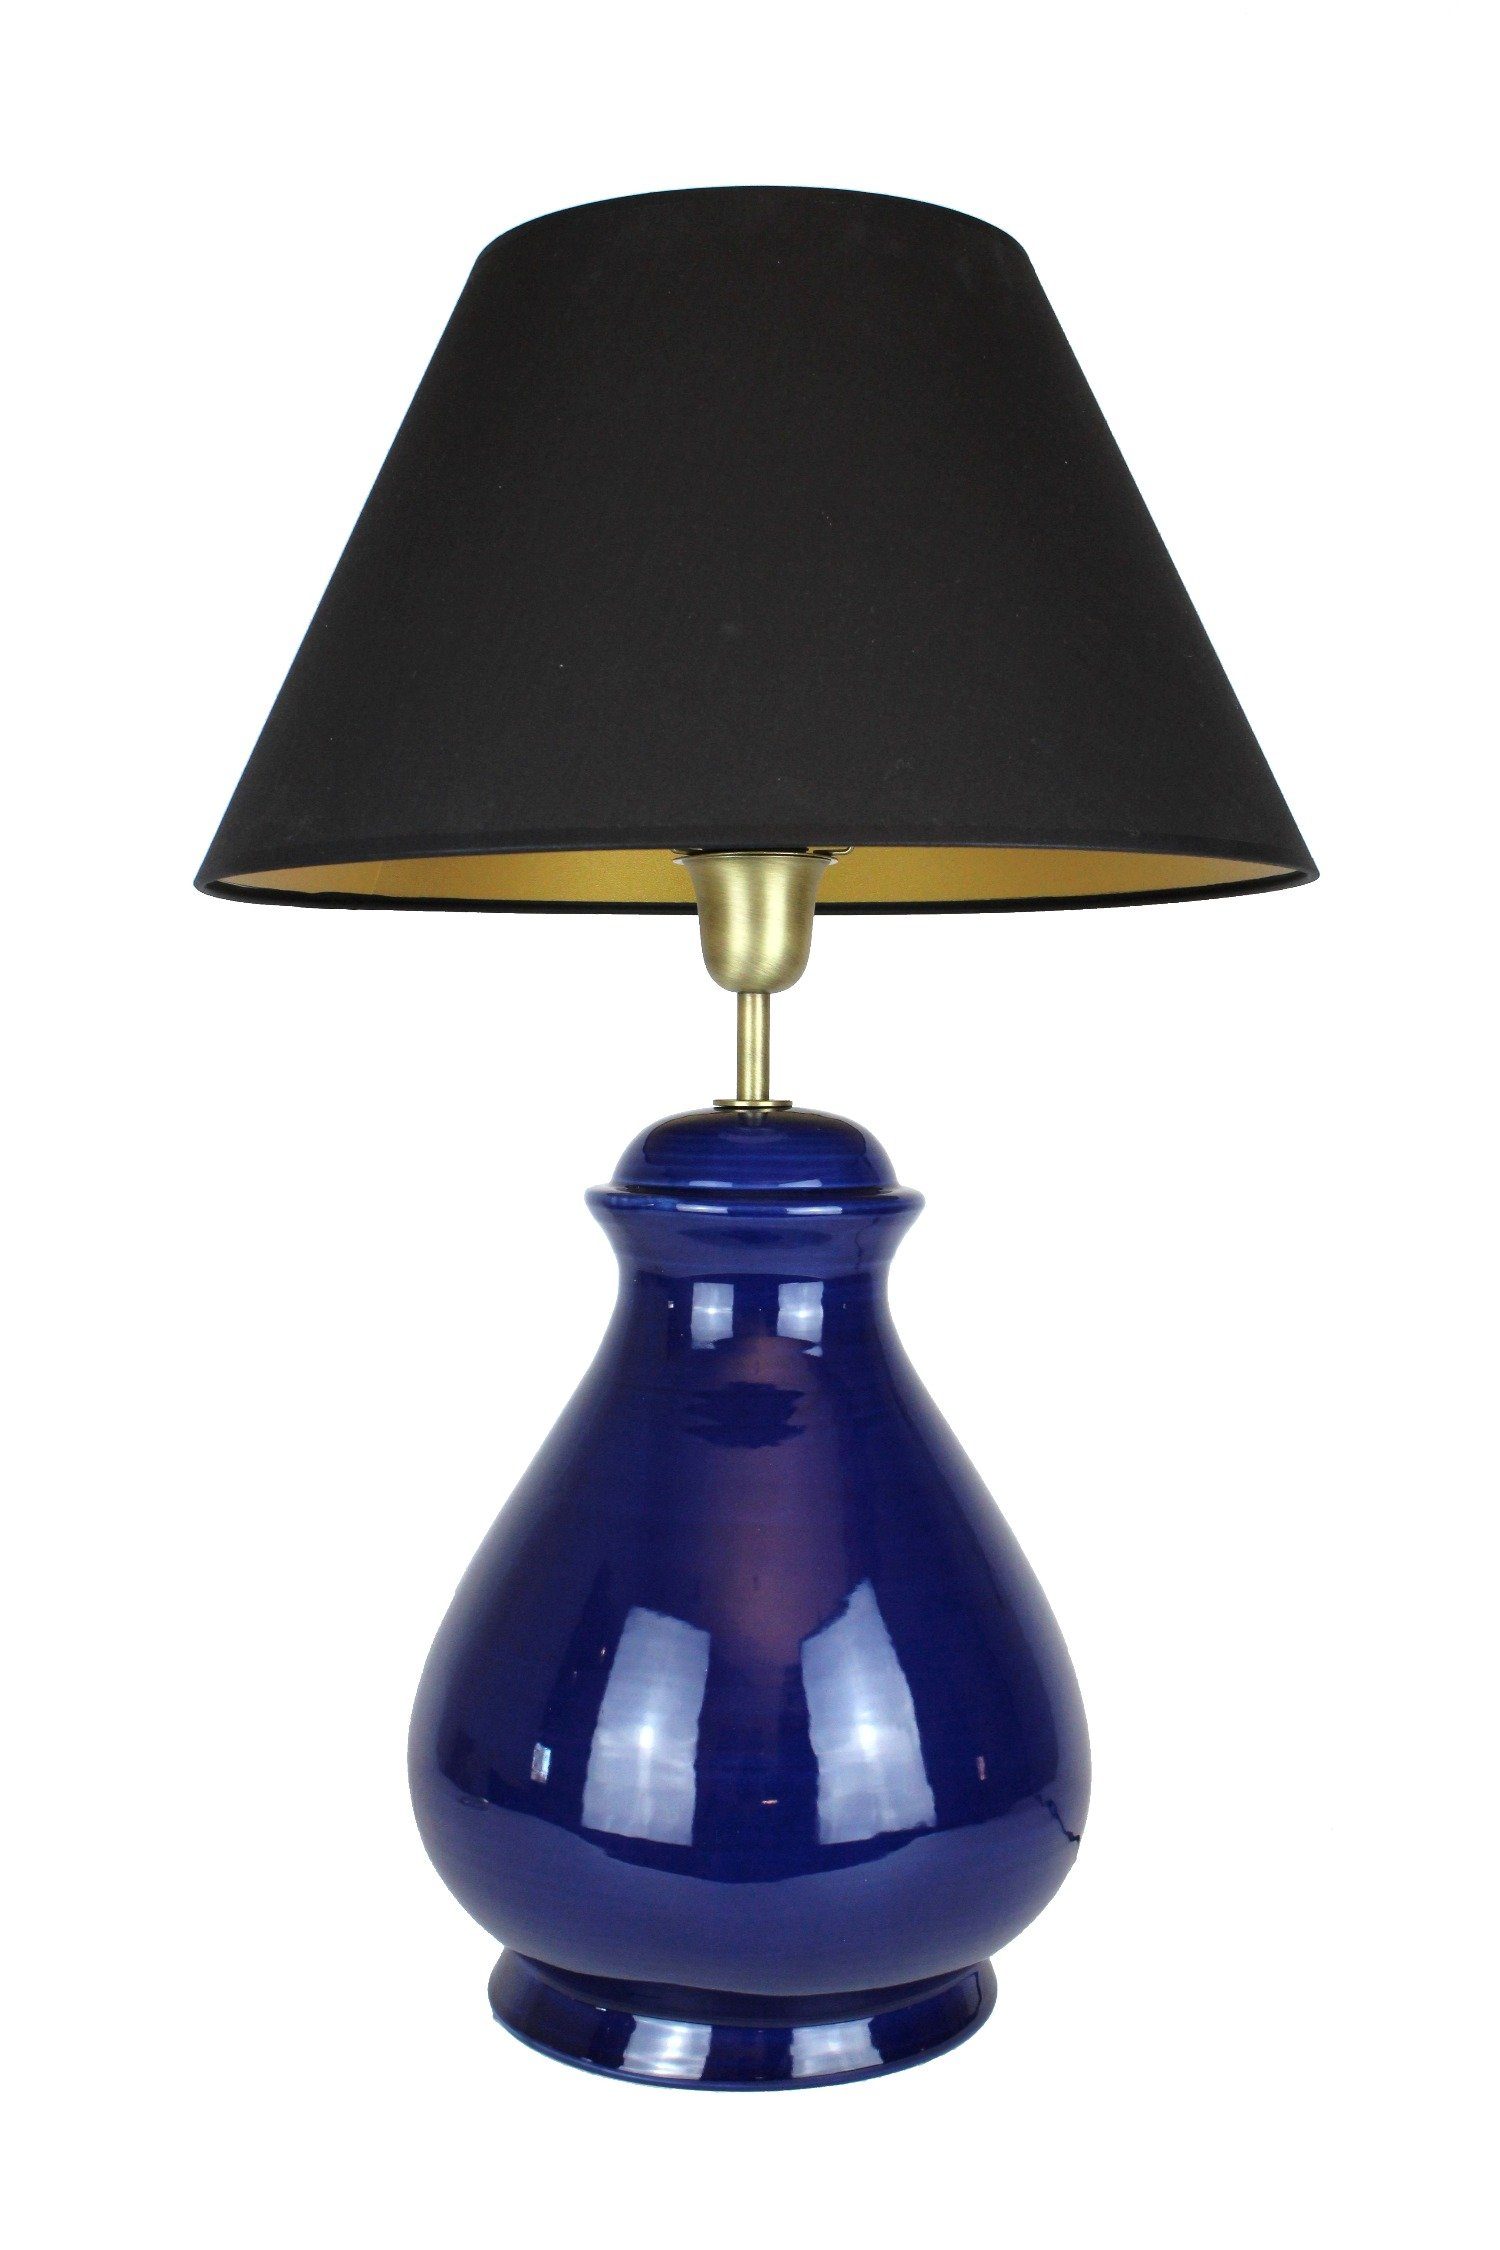 Signature Home Collection Nachttischlampe Tischlampe Keramik dunkelblau mit  Lampenschirm schwarz, ohne Leuchtmittel, warmweiß, Nachttischlampe